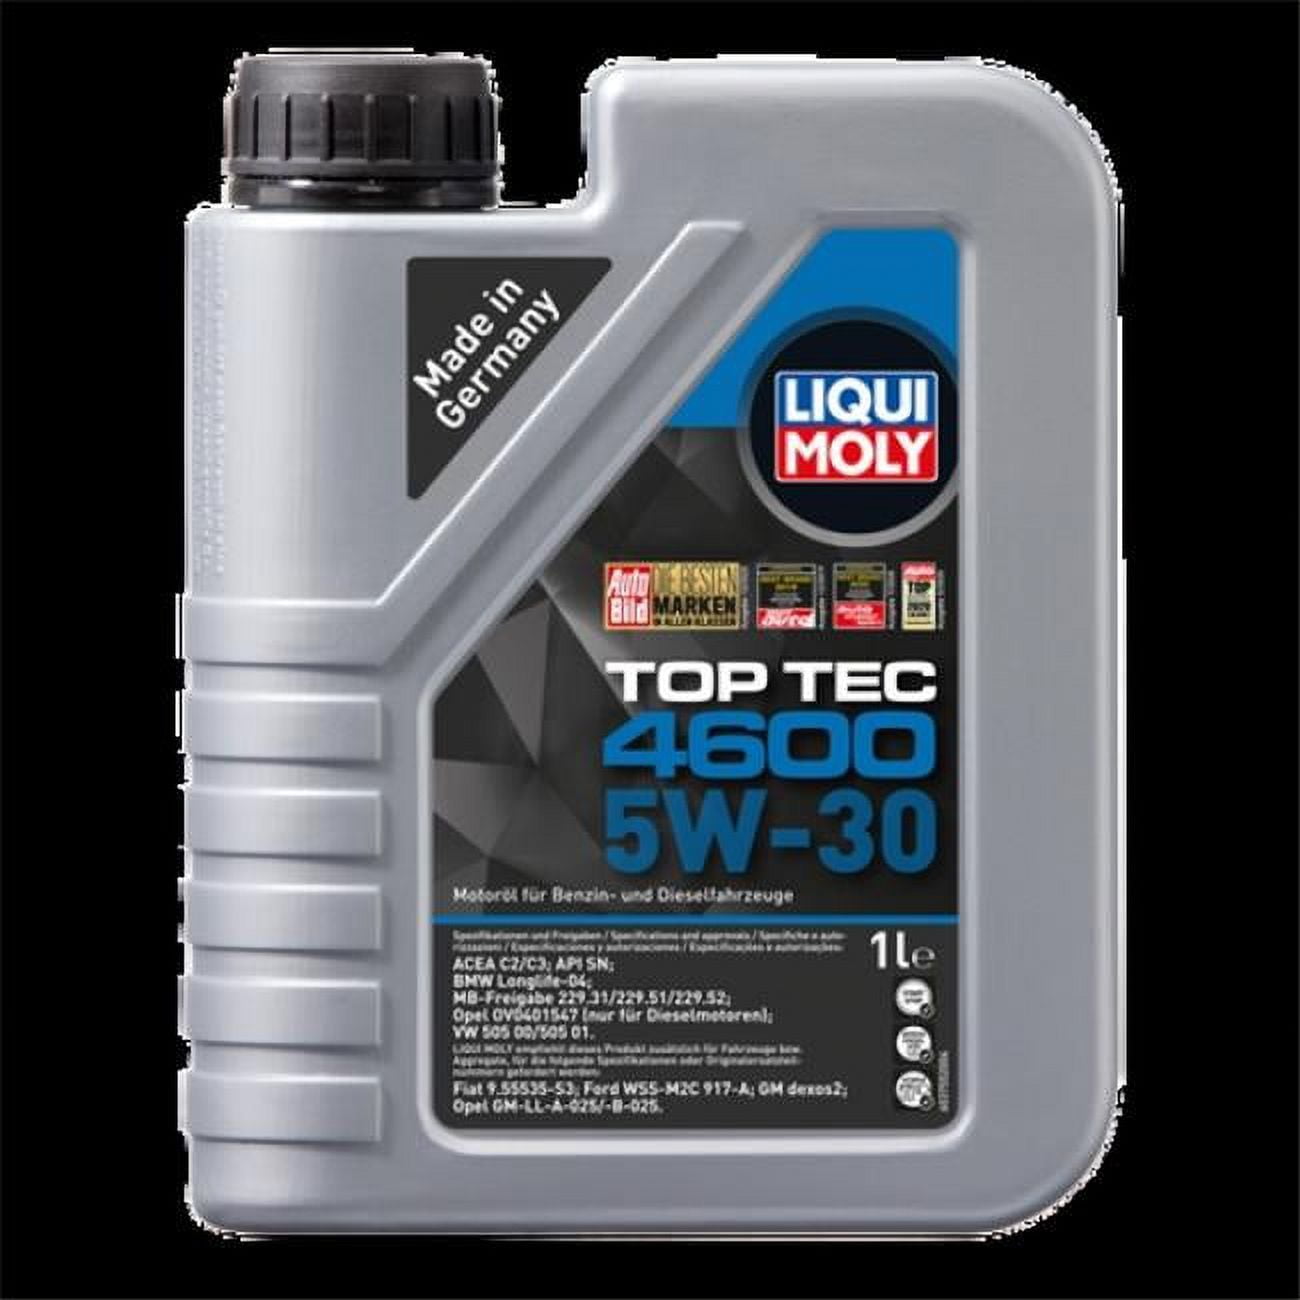 Motorenöl Top Tec 4600 5W-30, Öle & Additive